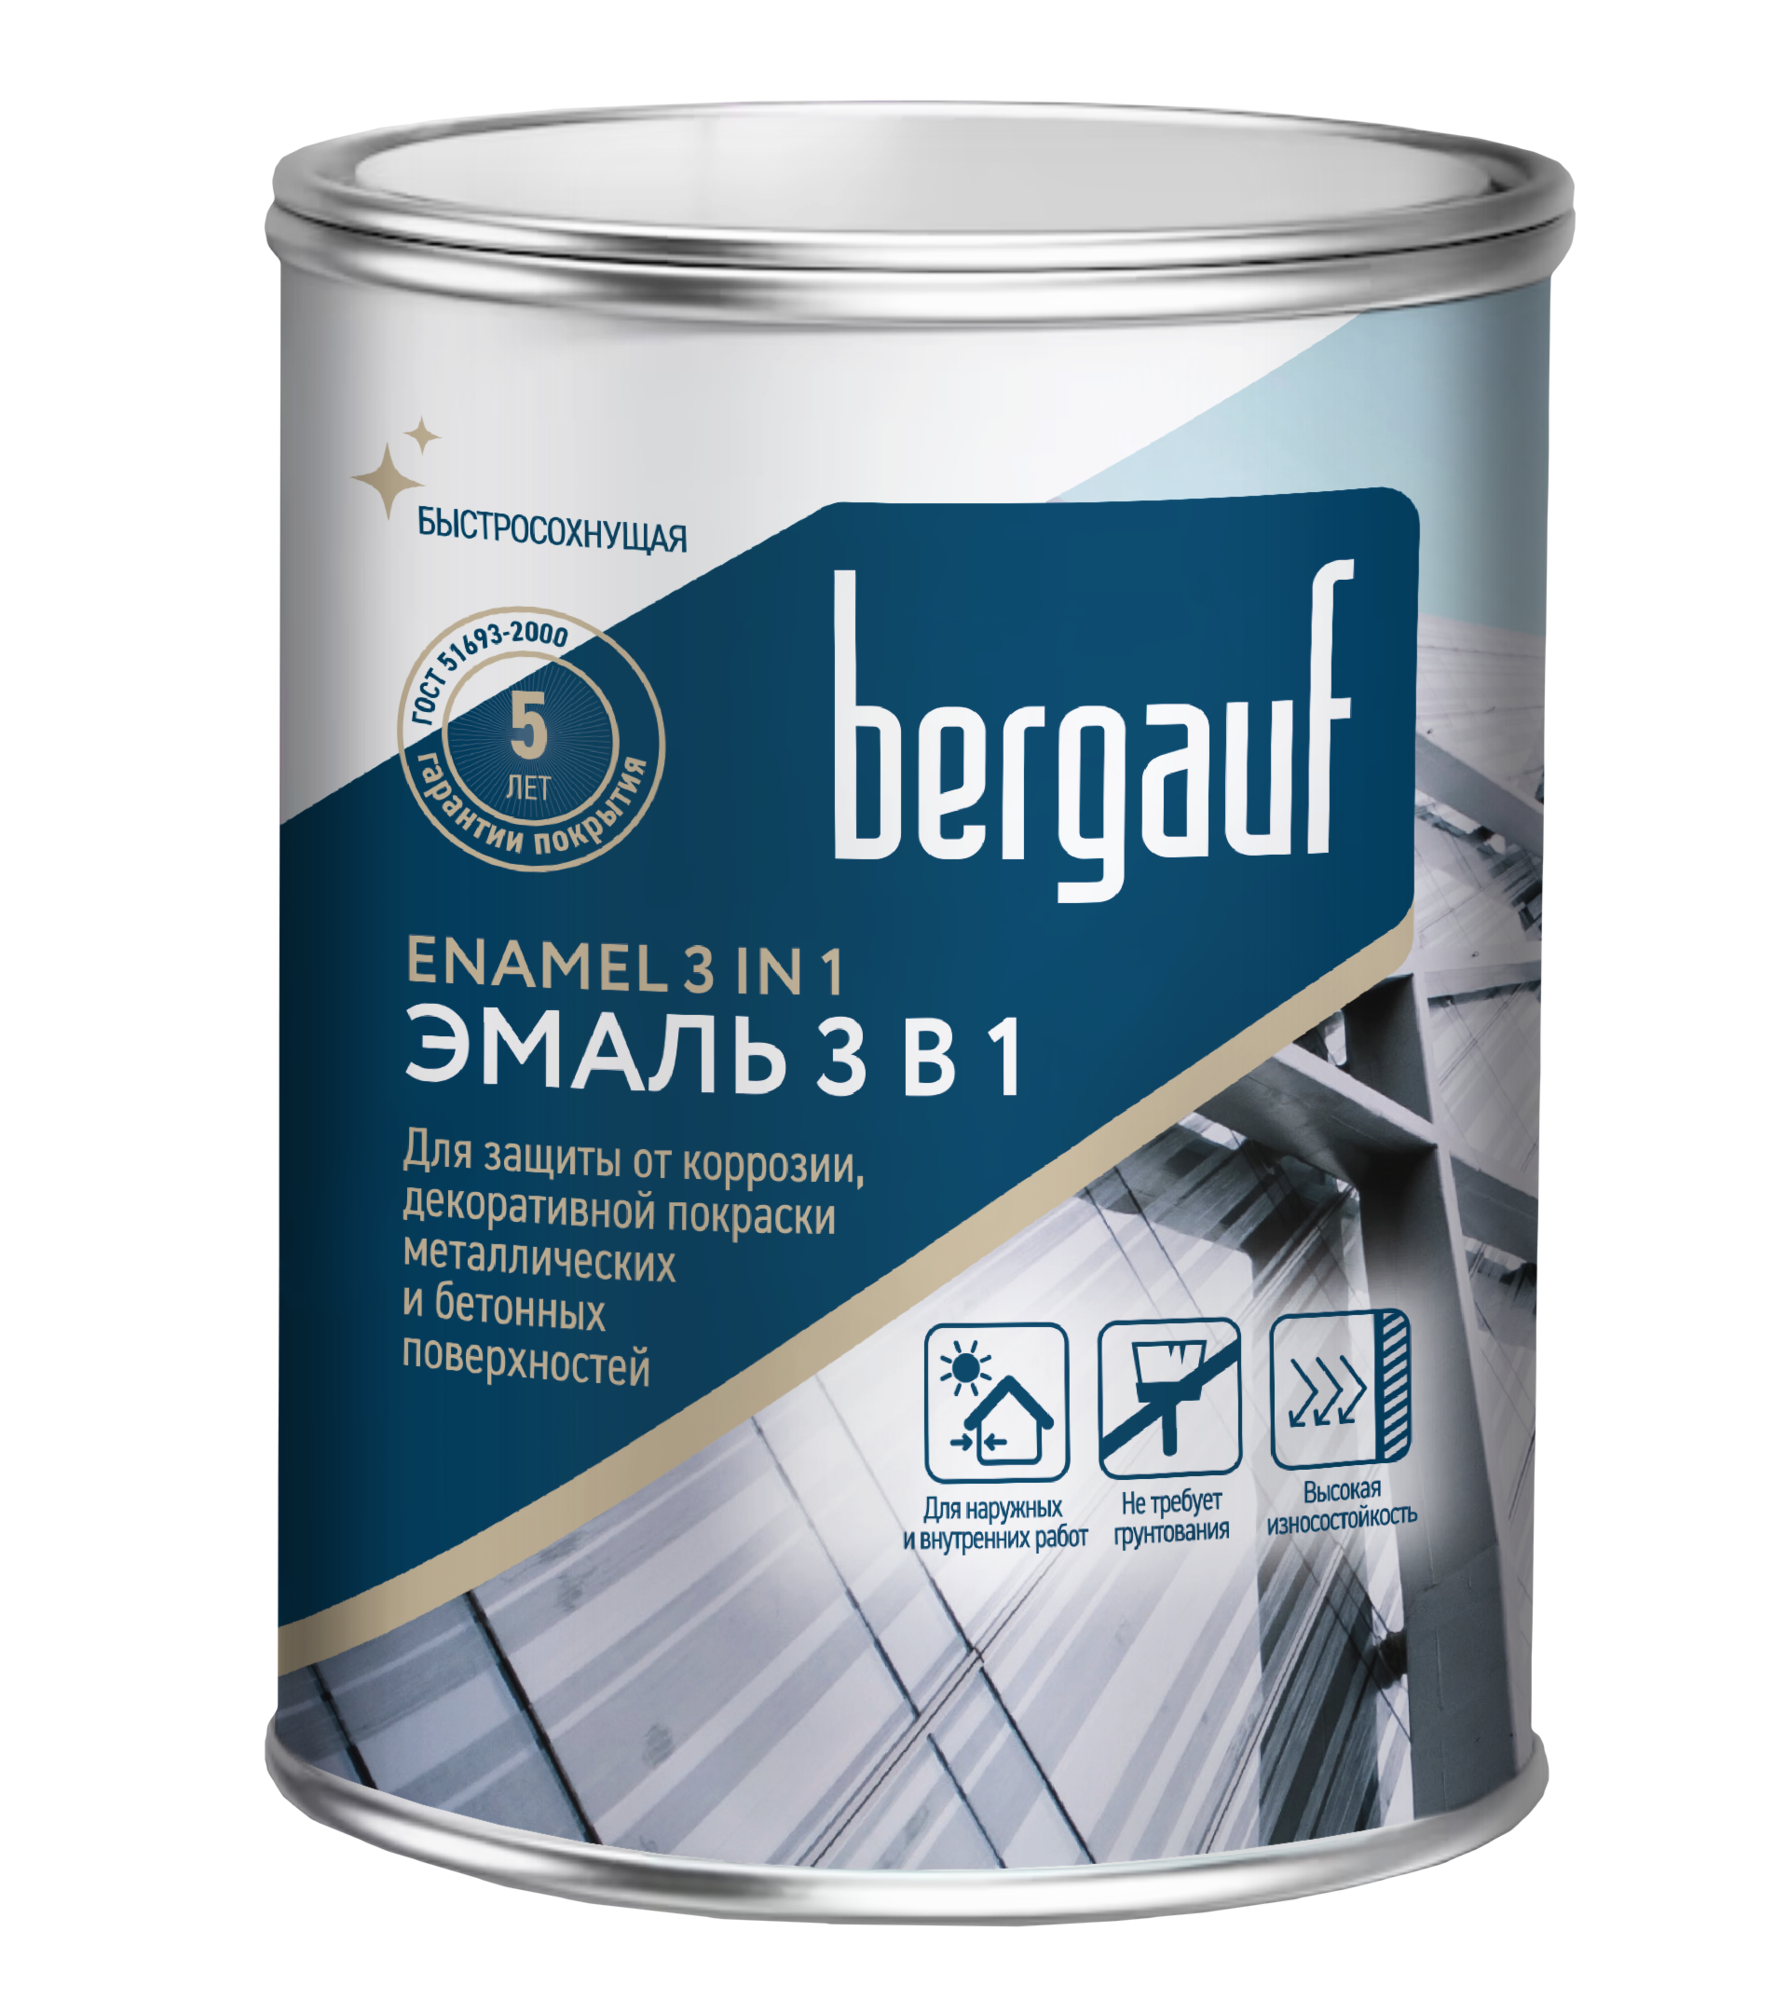 Bergauf ENAMEL 3 IN 1 алкидно-уретановая грунт эмаль 3 в 1 для защиты от коррозии, декоротивной покраски металлических и